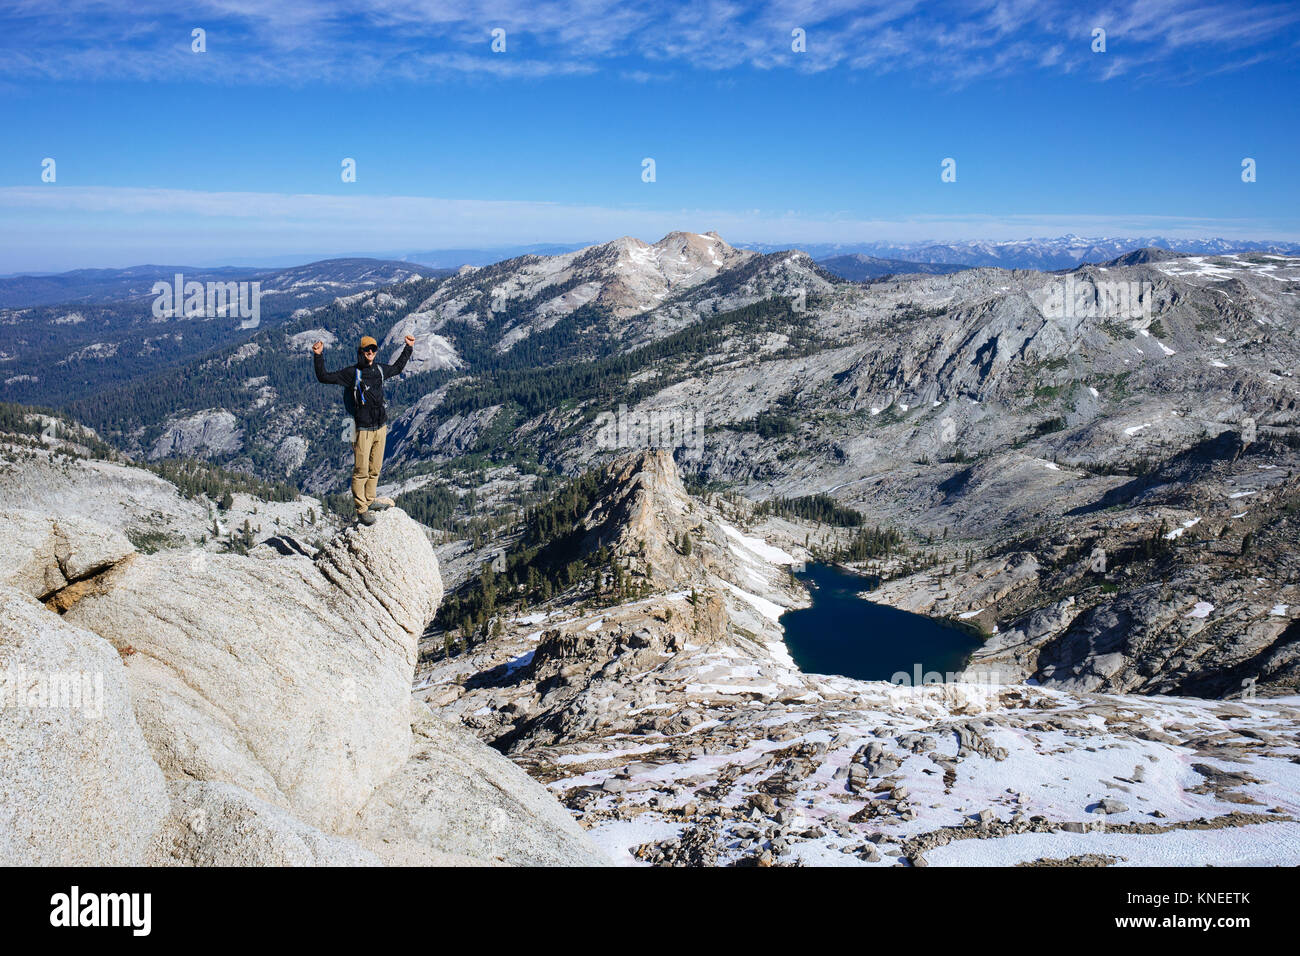 Mann auf Alta Peak mit erhobenen Armen, Pear See und Riesen Sequoia Wald in der Ferne, Kalifornien, USA Stockfoto